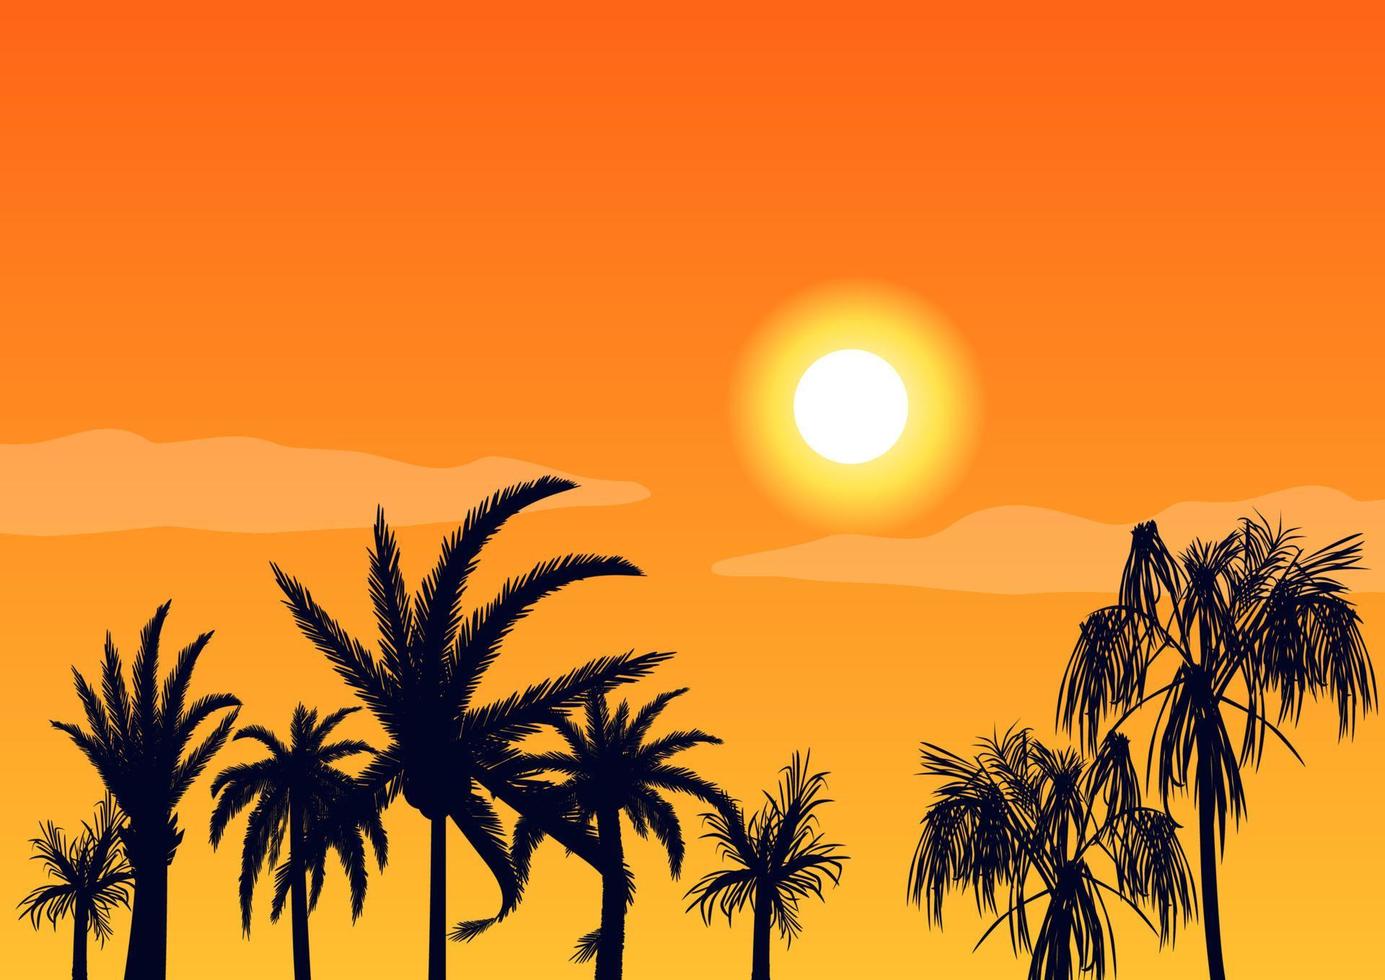 calurosa puesta de sol por la noche y siluetas de palmeras. playa tropical en el fondo puesta de sol naranja brillante hermoso paraíso costa resort laguna romántica con vector exótico.